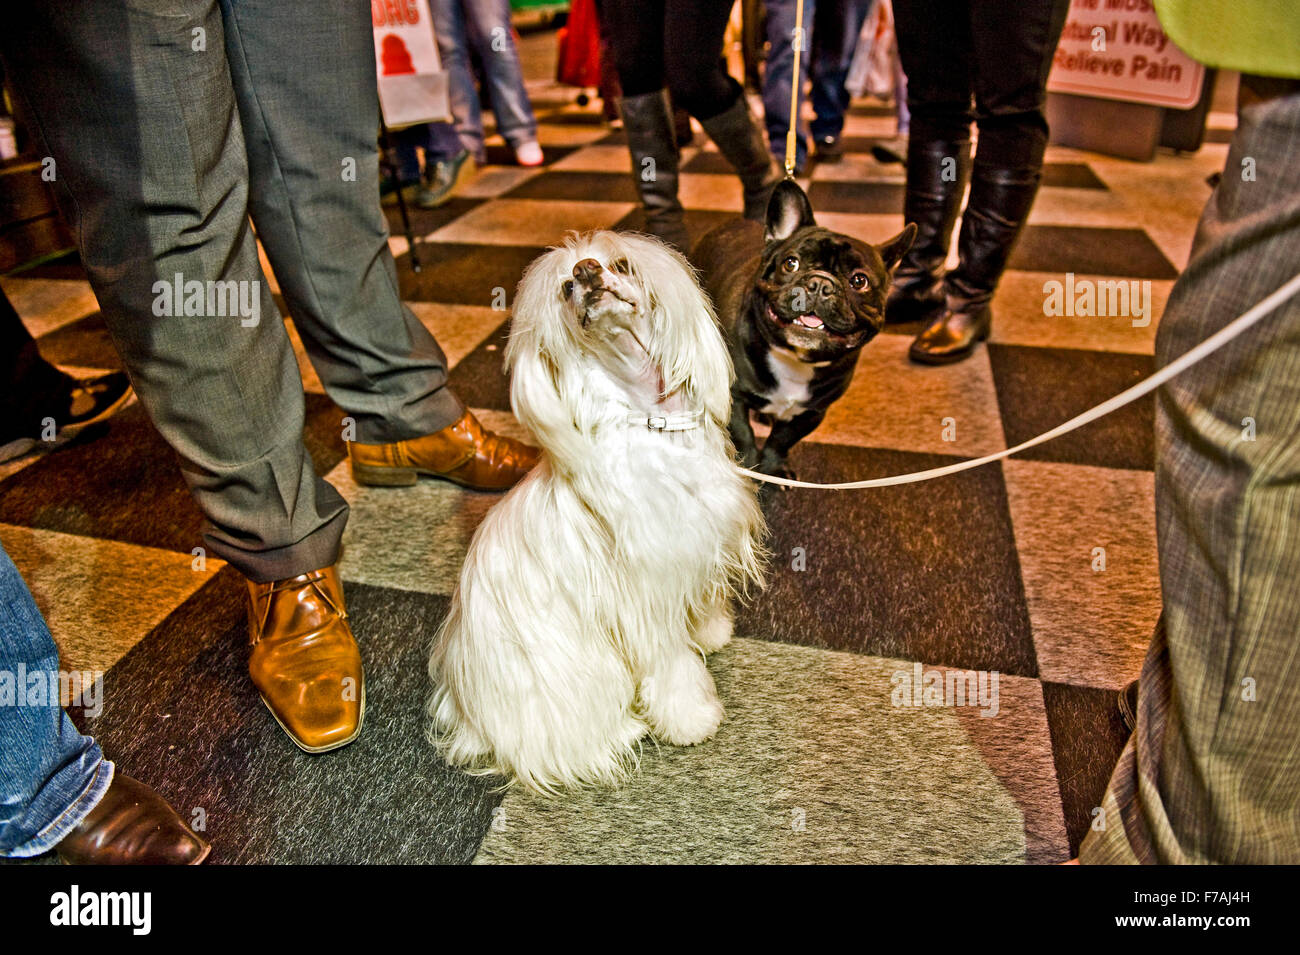 Il crufts dog show appassionato di cane barboncino il badge amante del cane barboncino amante Foto Stock